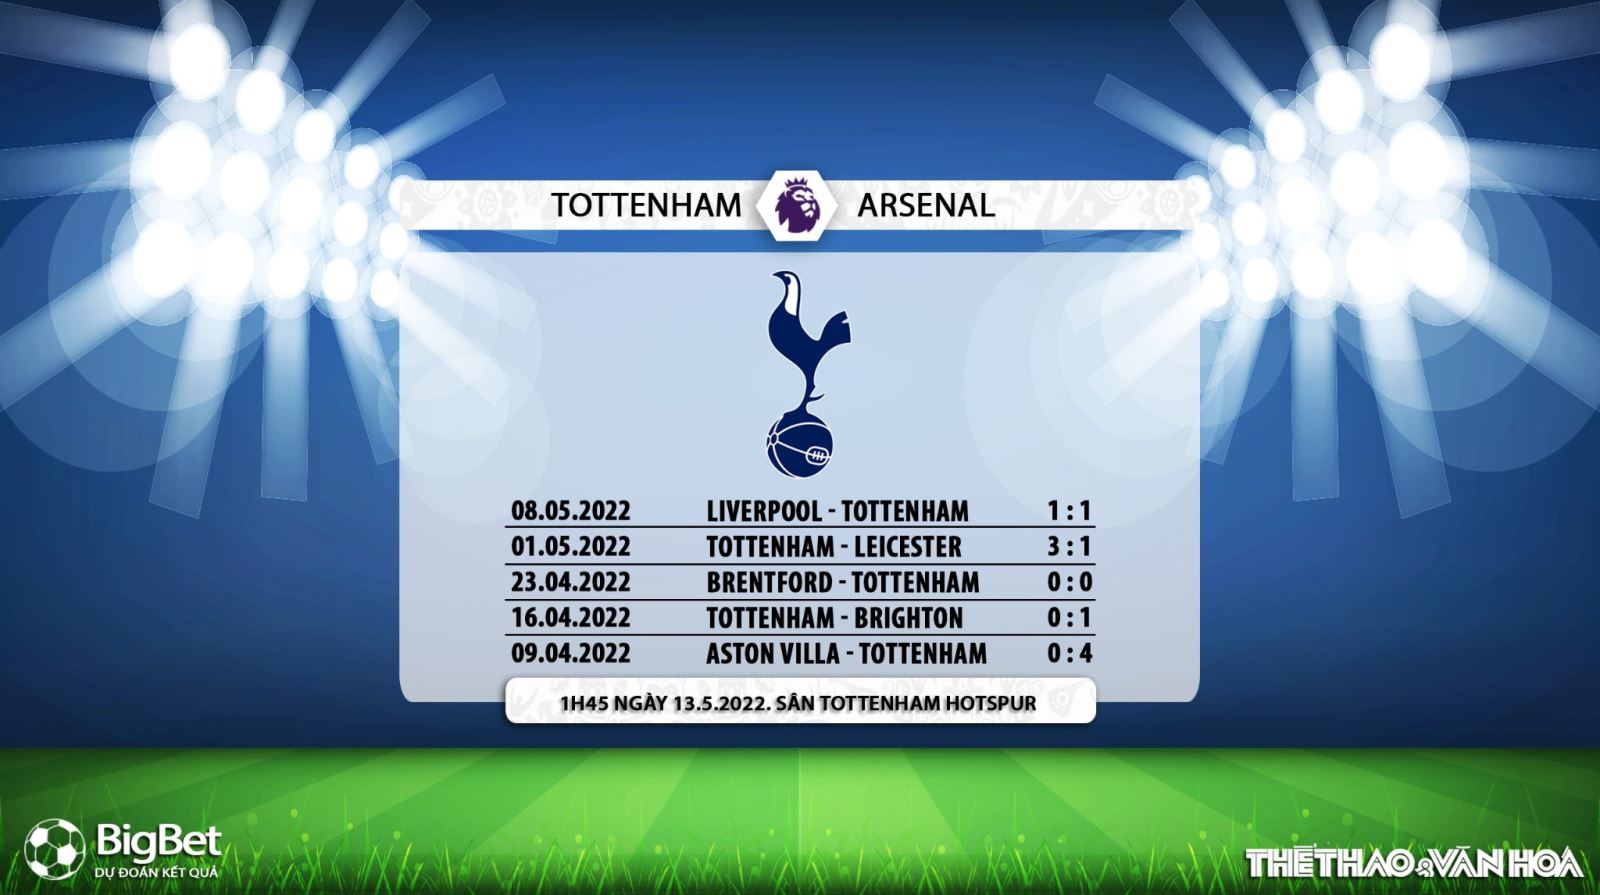 soi kèo Tottenham vs Arsenal, kèo nhà cái, Tottenham vs Arsenal, nhận định bóng đá, Tottenham, Arsenal, keo nha cai, dự đoán bóng đá, Ngoại hạng Anh, bóng đá Anh